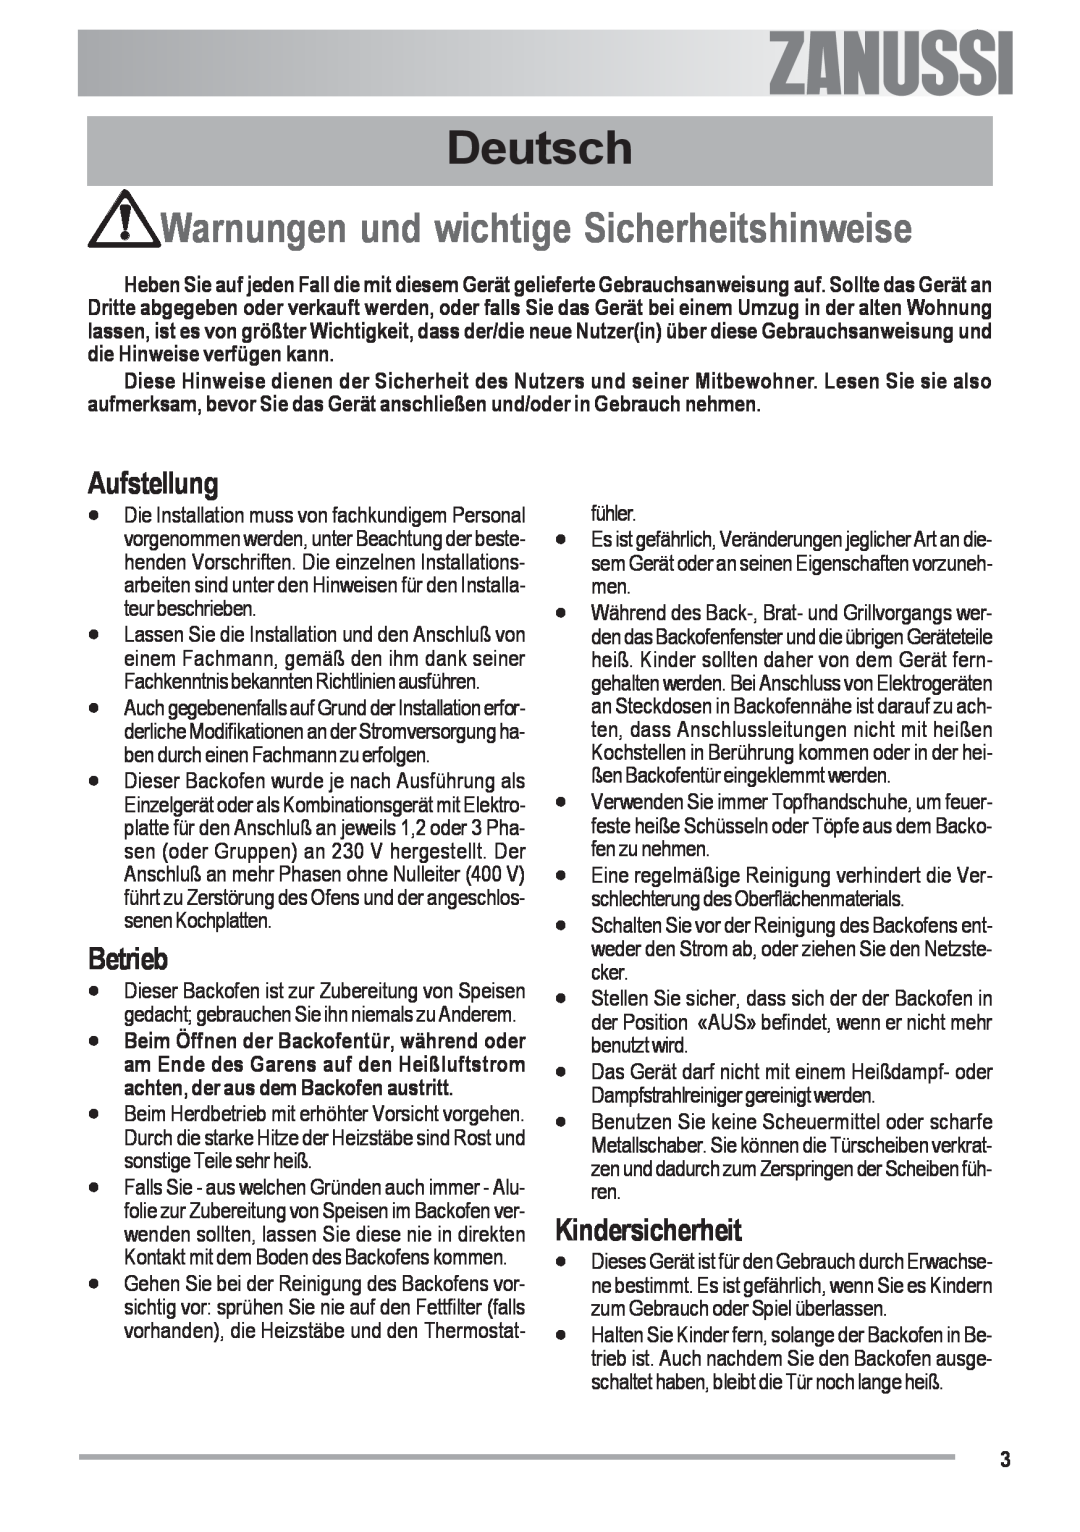 Zanussi ZOU 482 Deutsch, Warnungen und wichtige Sicherheitshinweise, Aufstellung, Betrieb, Kindersicherheit, Electrolux 